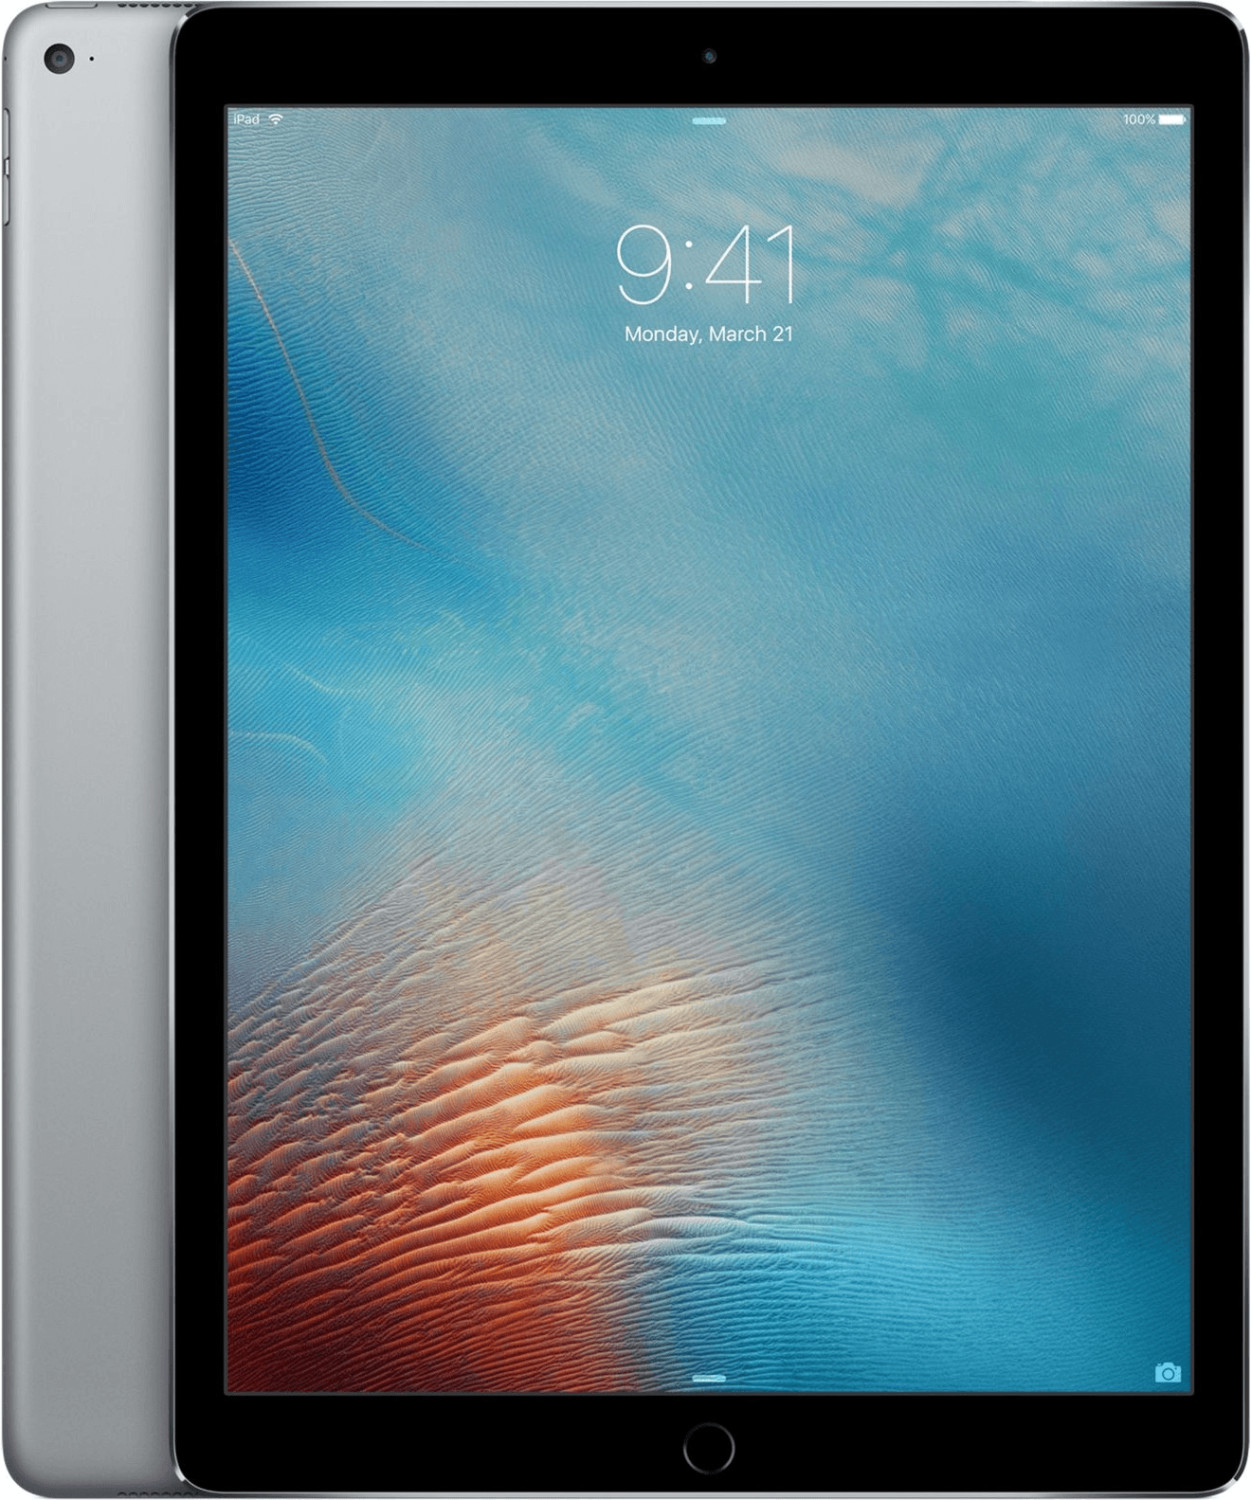 Apple iPad Pro 12.9 128GB WiFi spacegrau